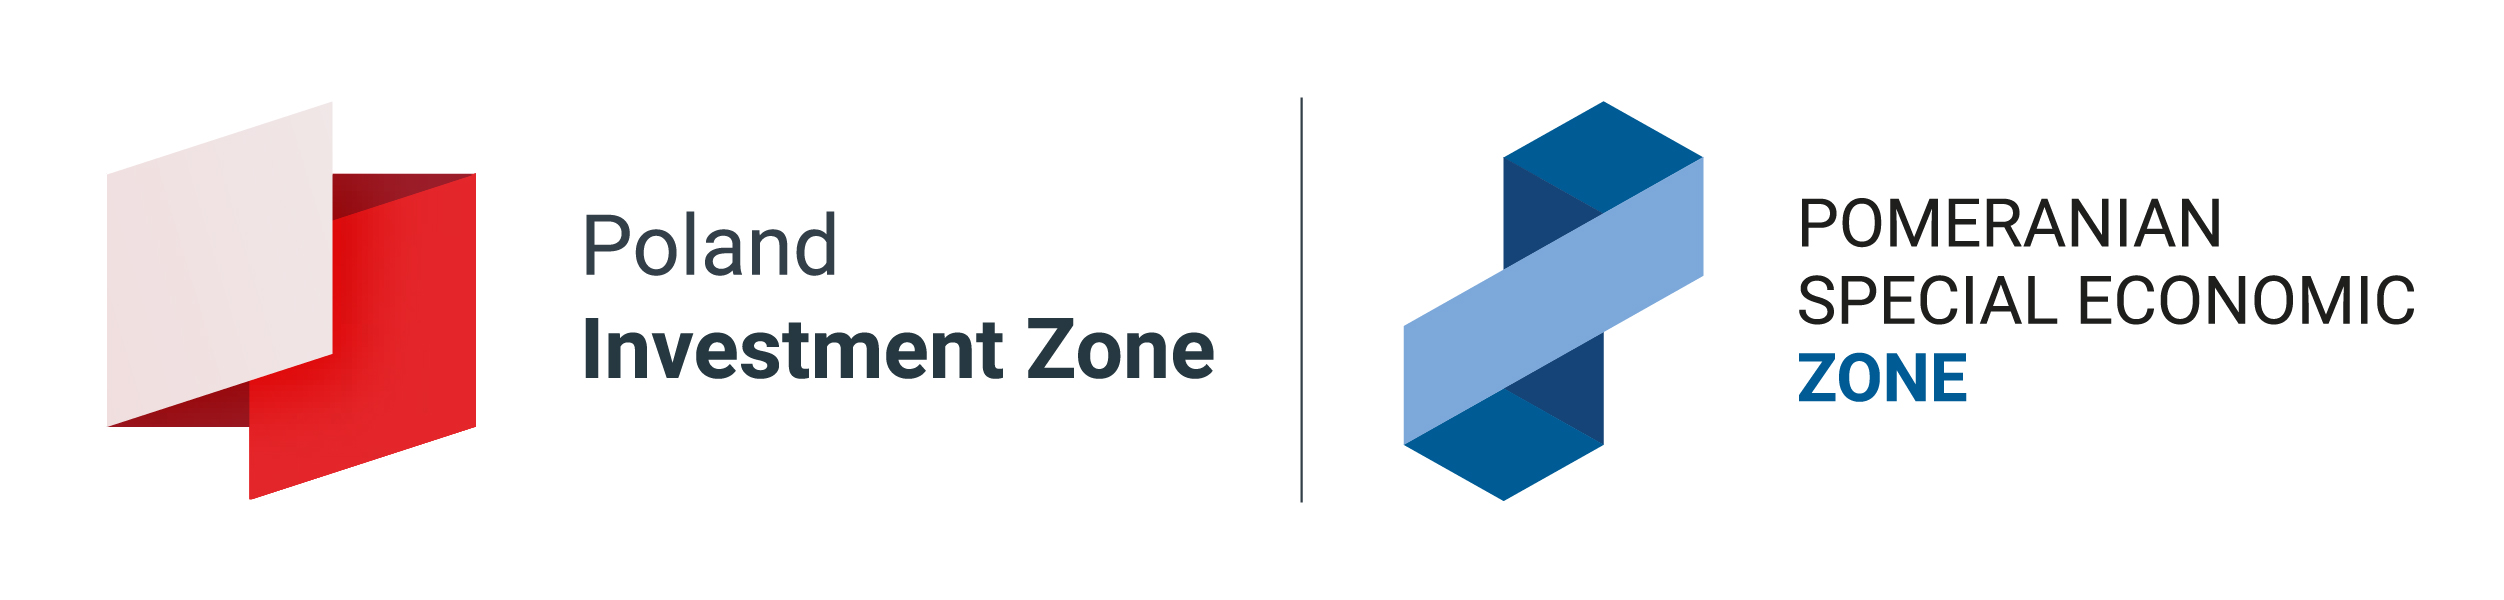 Pomeranian Special Economic Zone logo